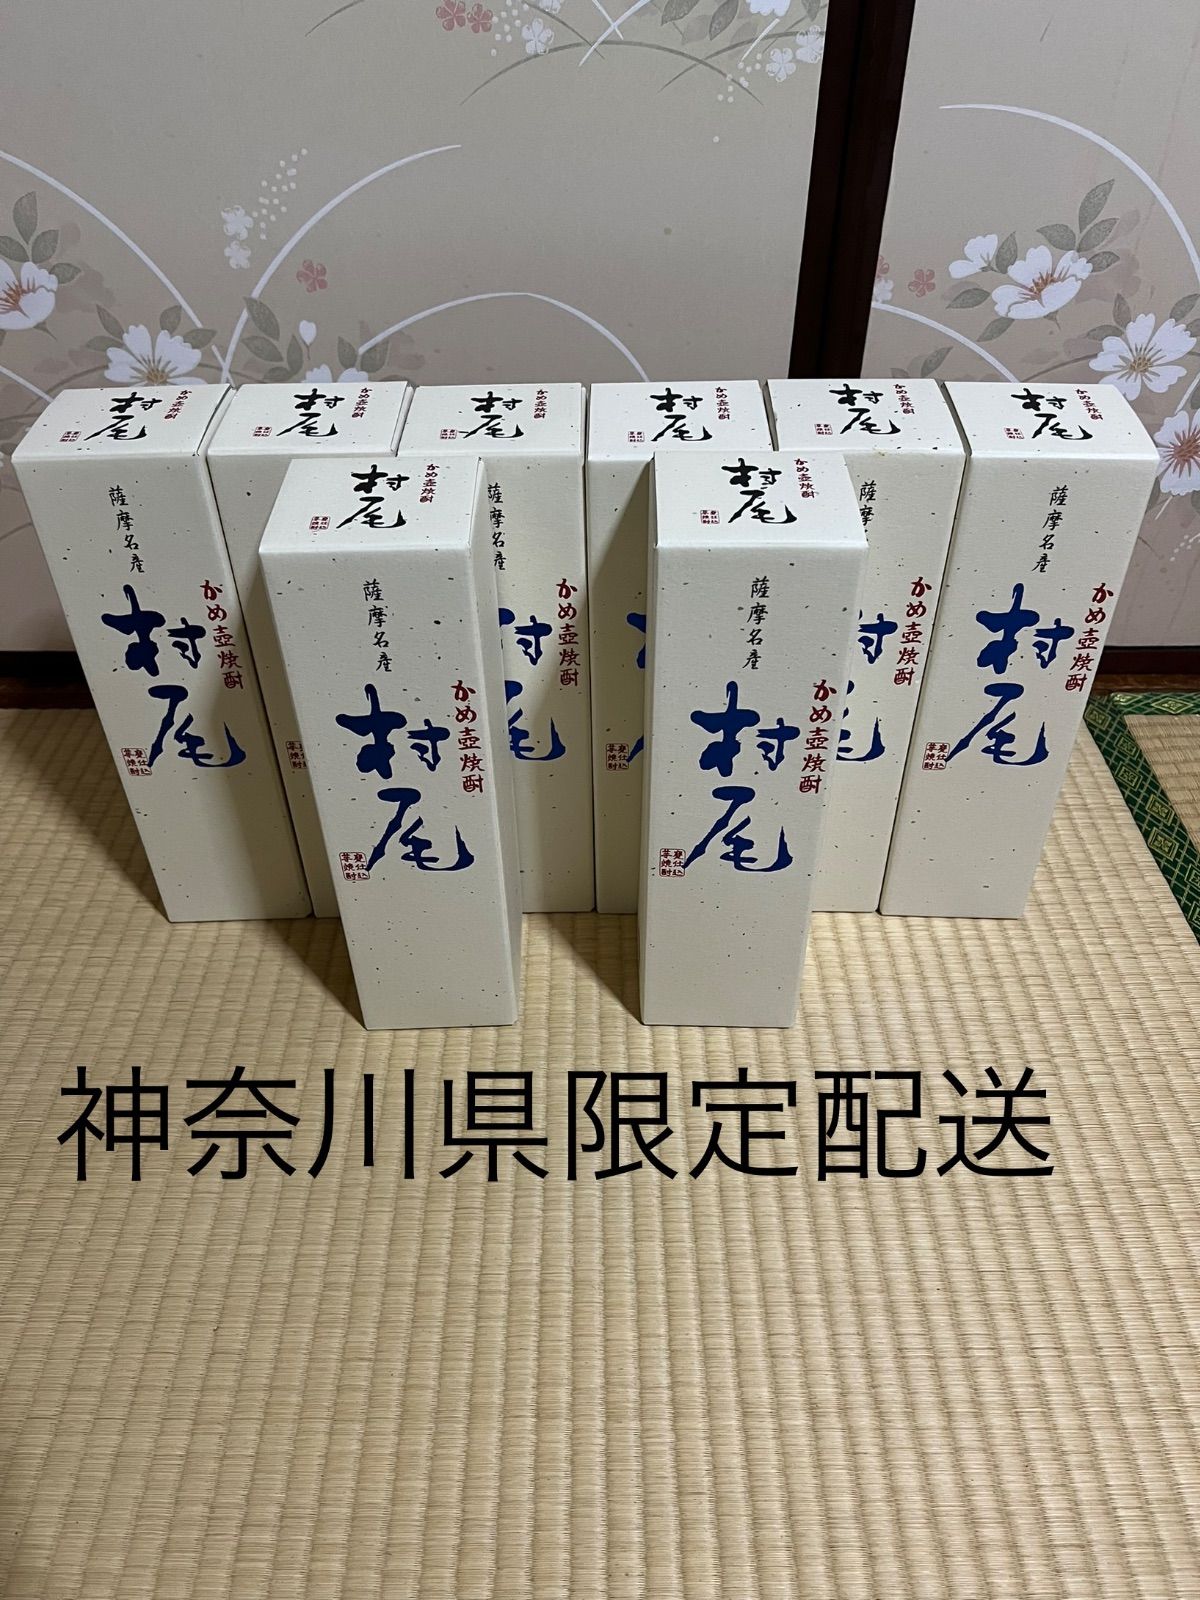 焼酎の種類芋焼酎村尾 ANAオリジナルパッケージ 750ml 4本セット